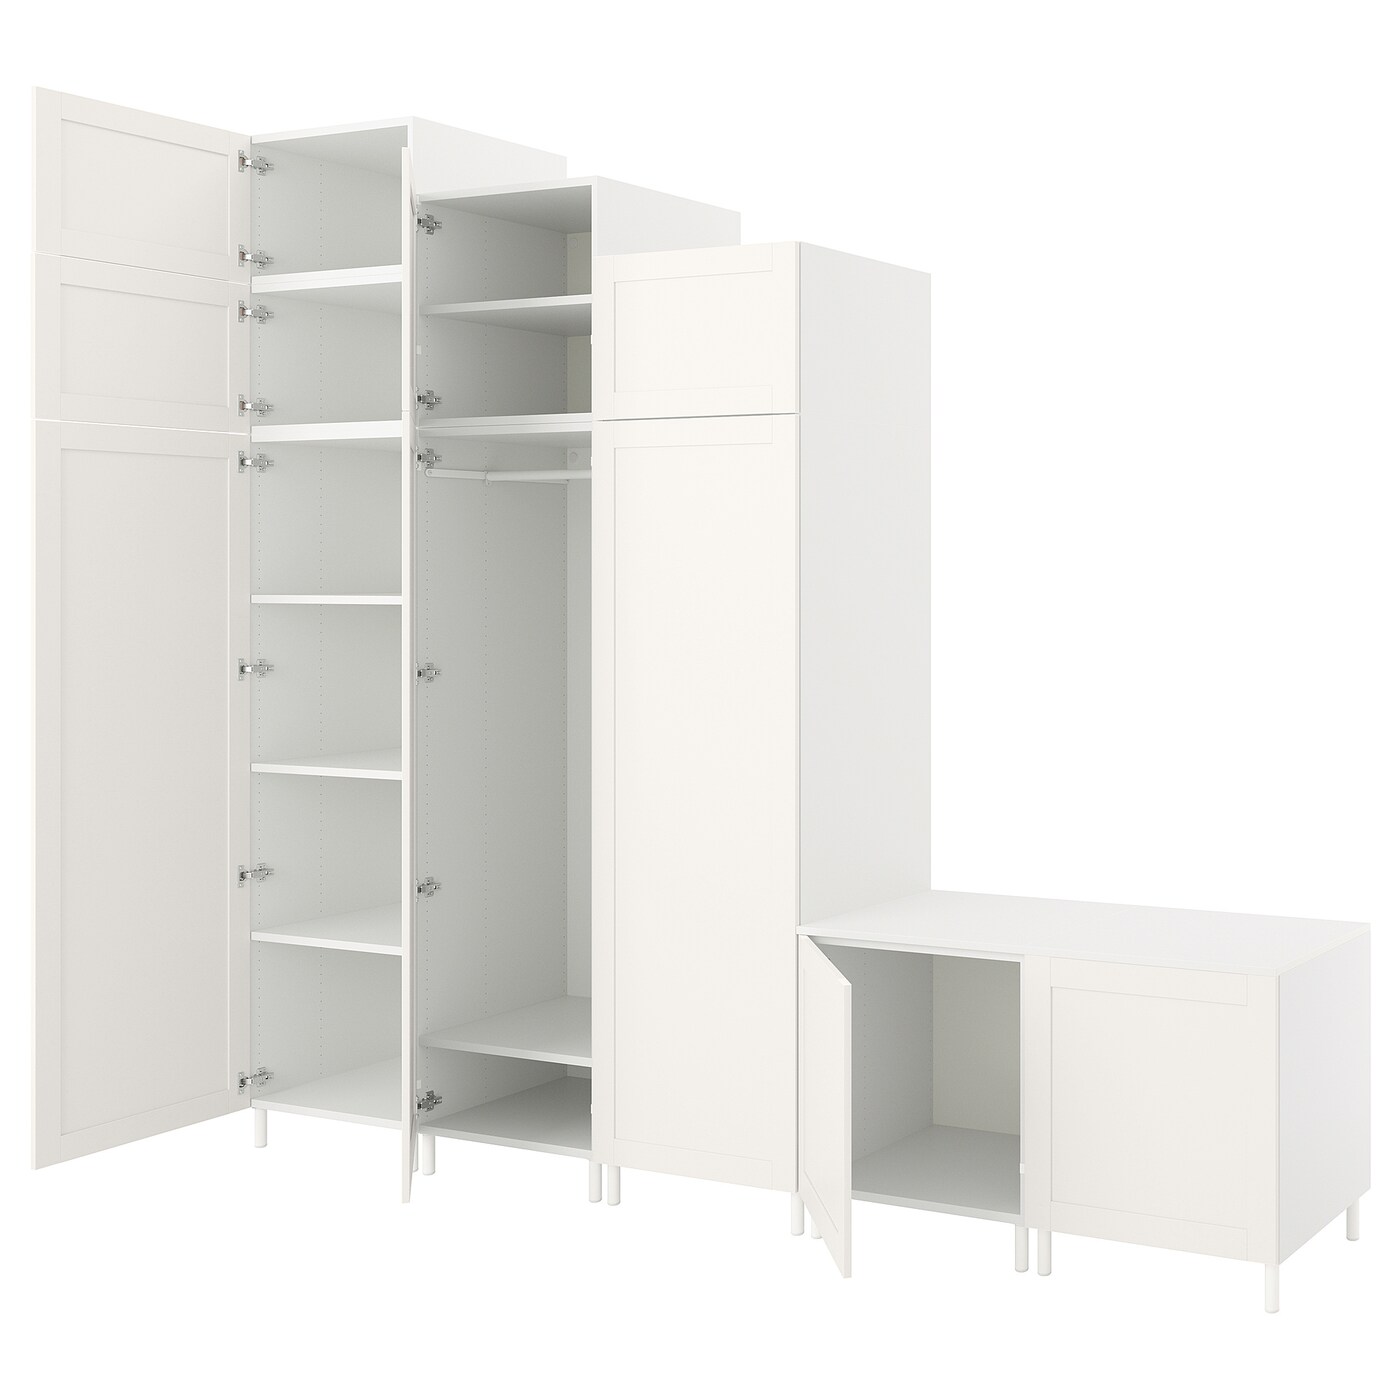 Платяной шкаф - PLATSA/SANNIDAL/IKEA/ ПЛАТСА/САННИДАЛИКЕА,300x57x271 см, белый